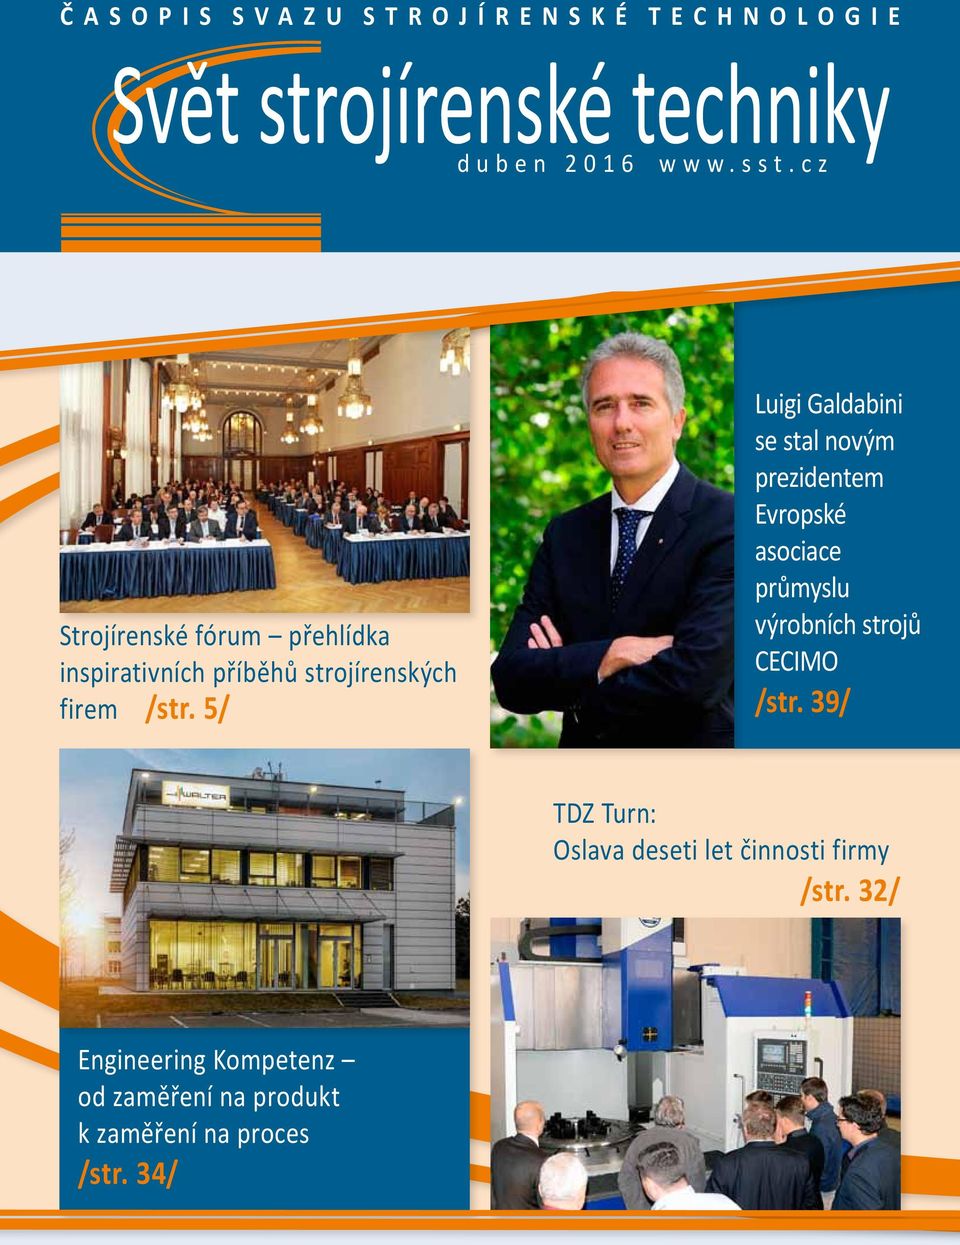 5/ Luigi Galdabini se stal novým prezidentem Evropské asociace průmyslu výrobních strojů CECIMO